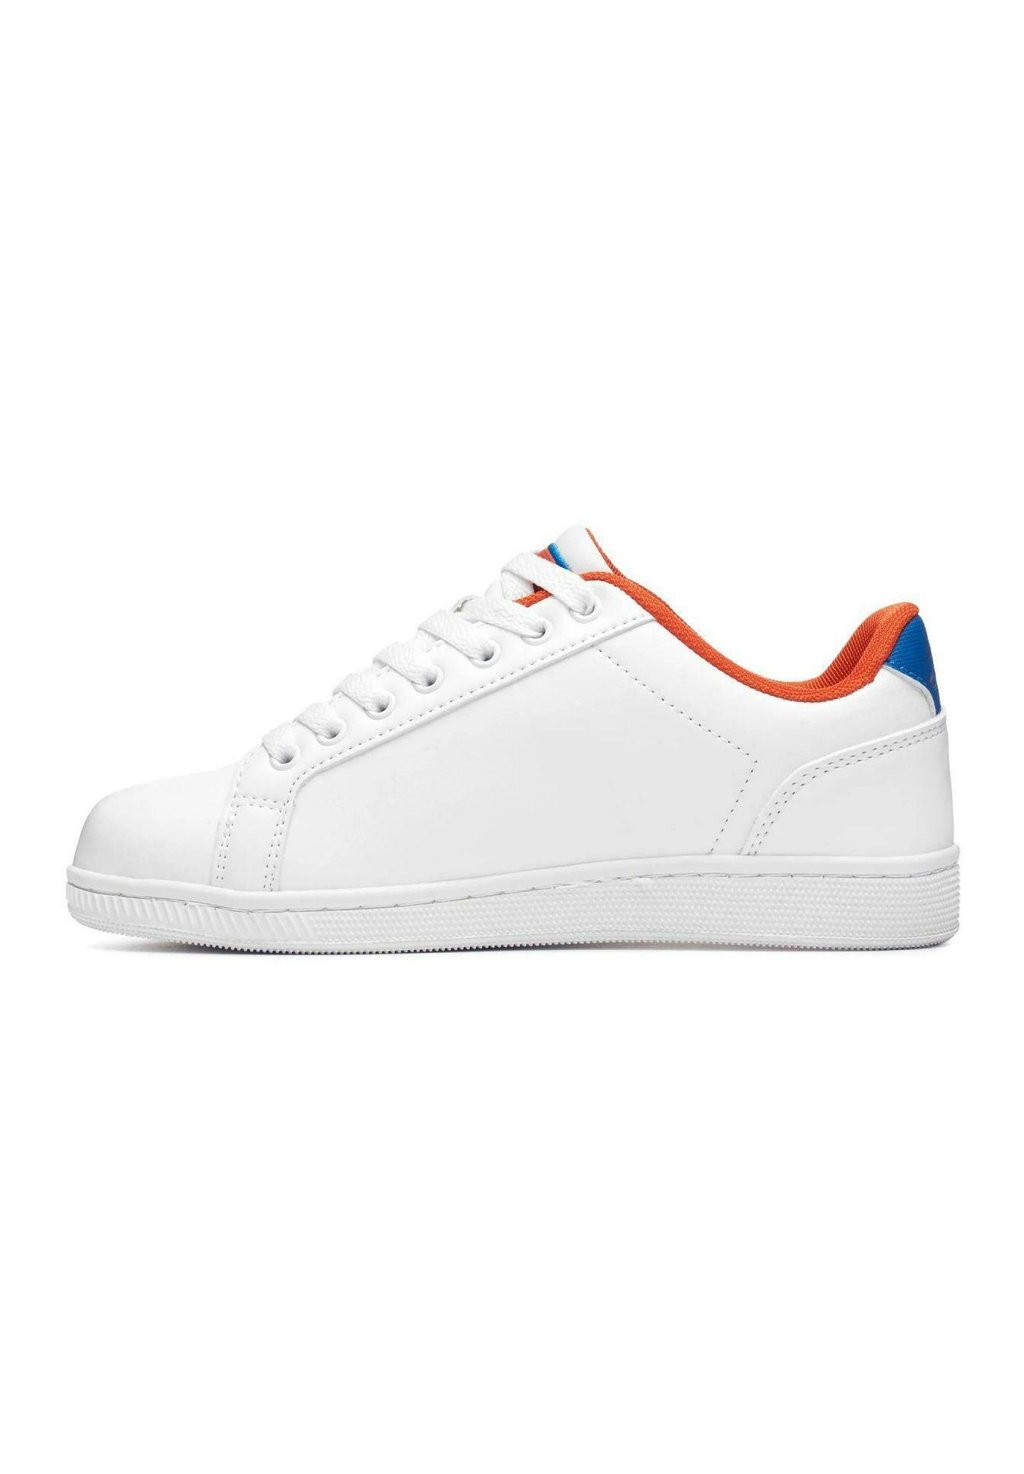 Низкие кроссовки Galter 5 Logo Kappa, цвет bianco arancione blu